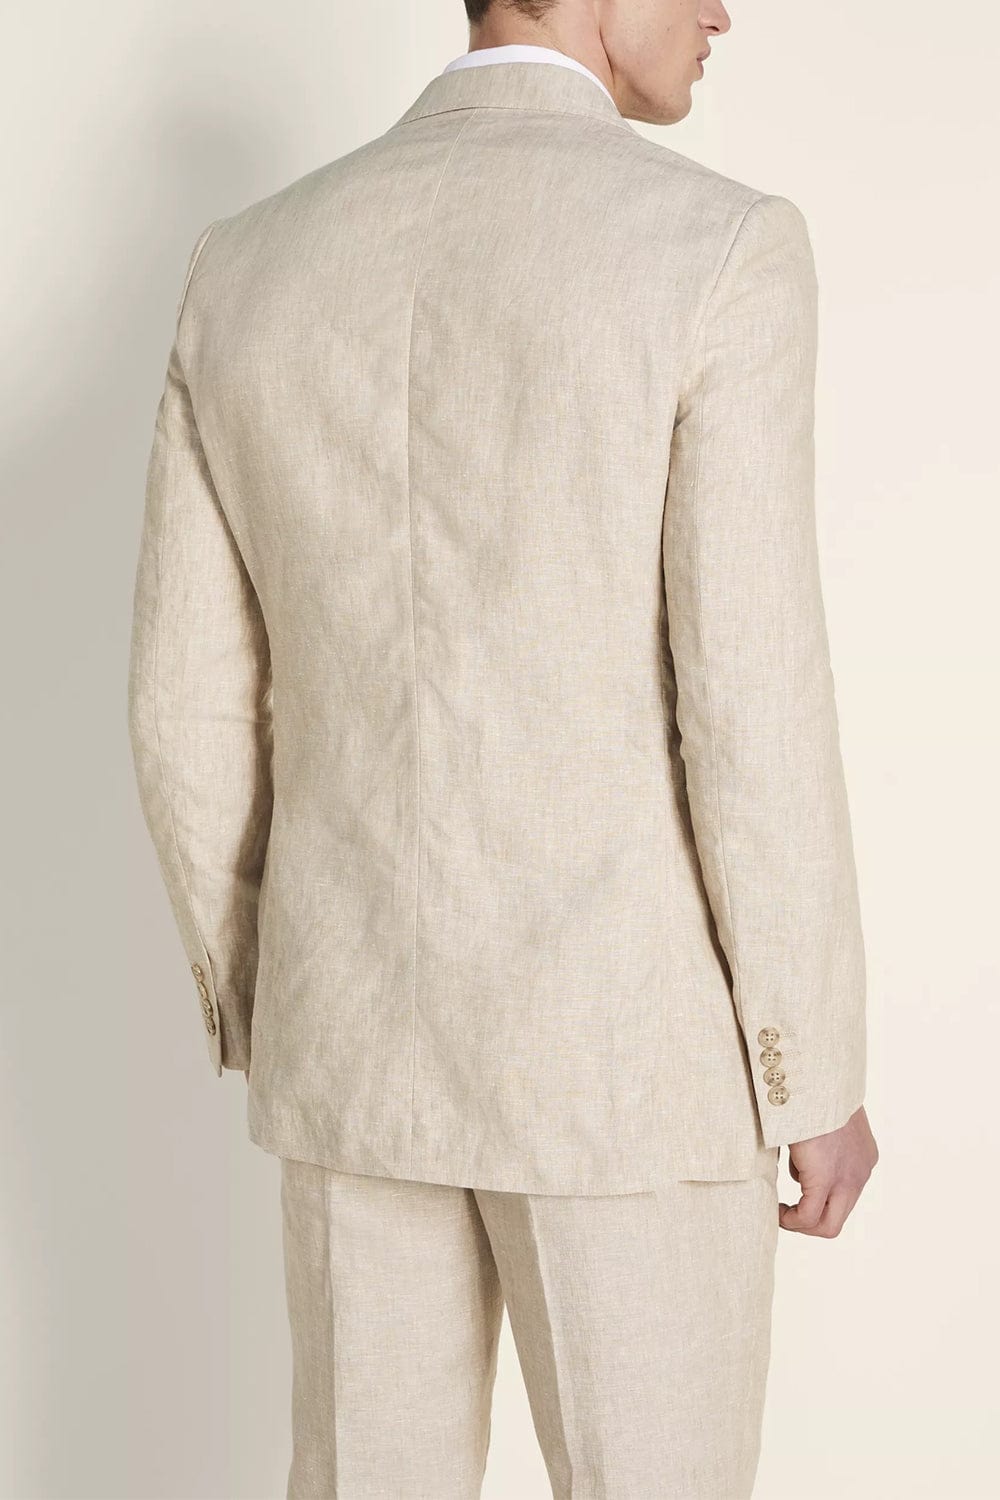 aesido Men's Suit 2 Pieces Double Button Jacket (Blazer+Pants)